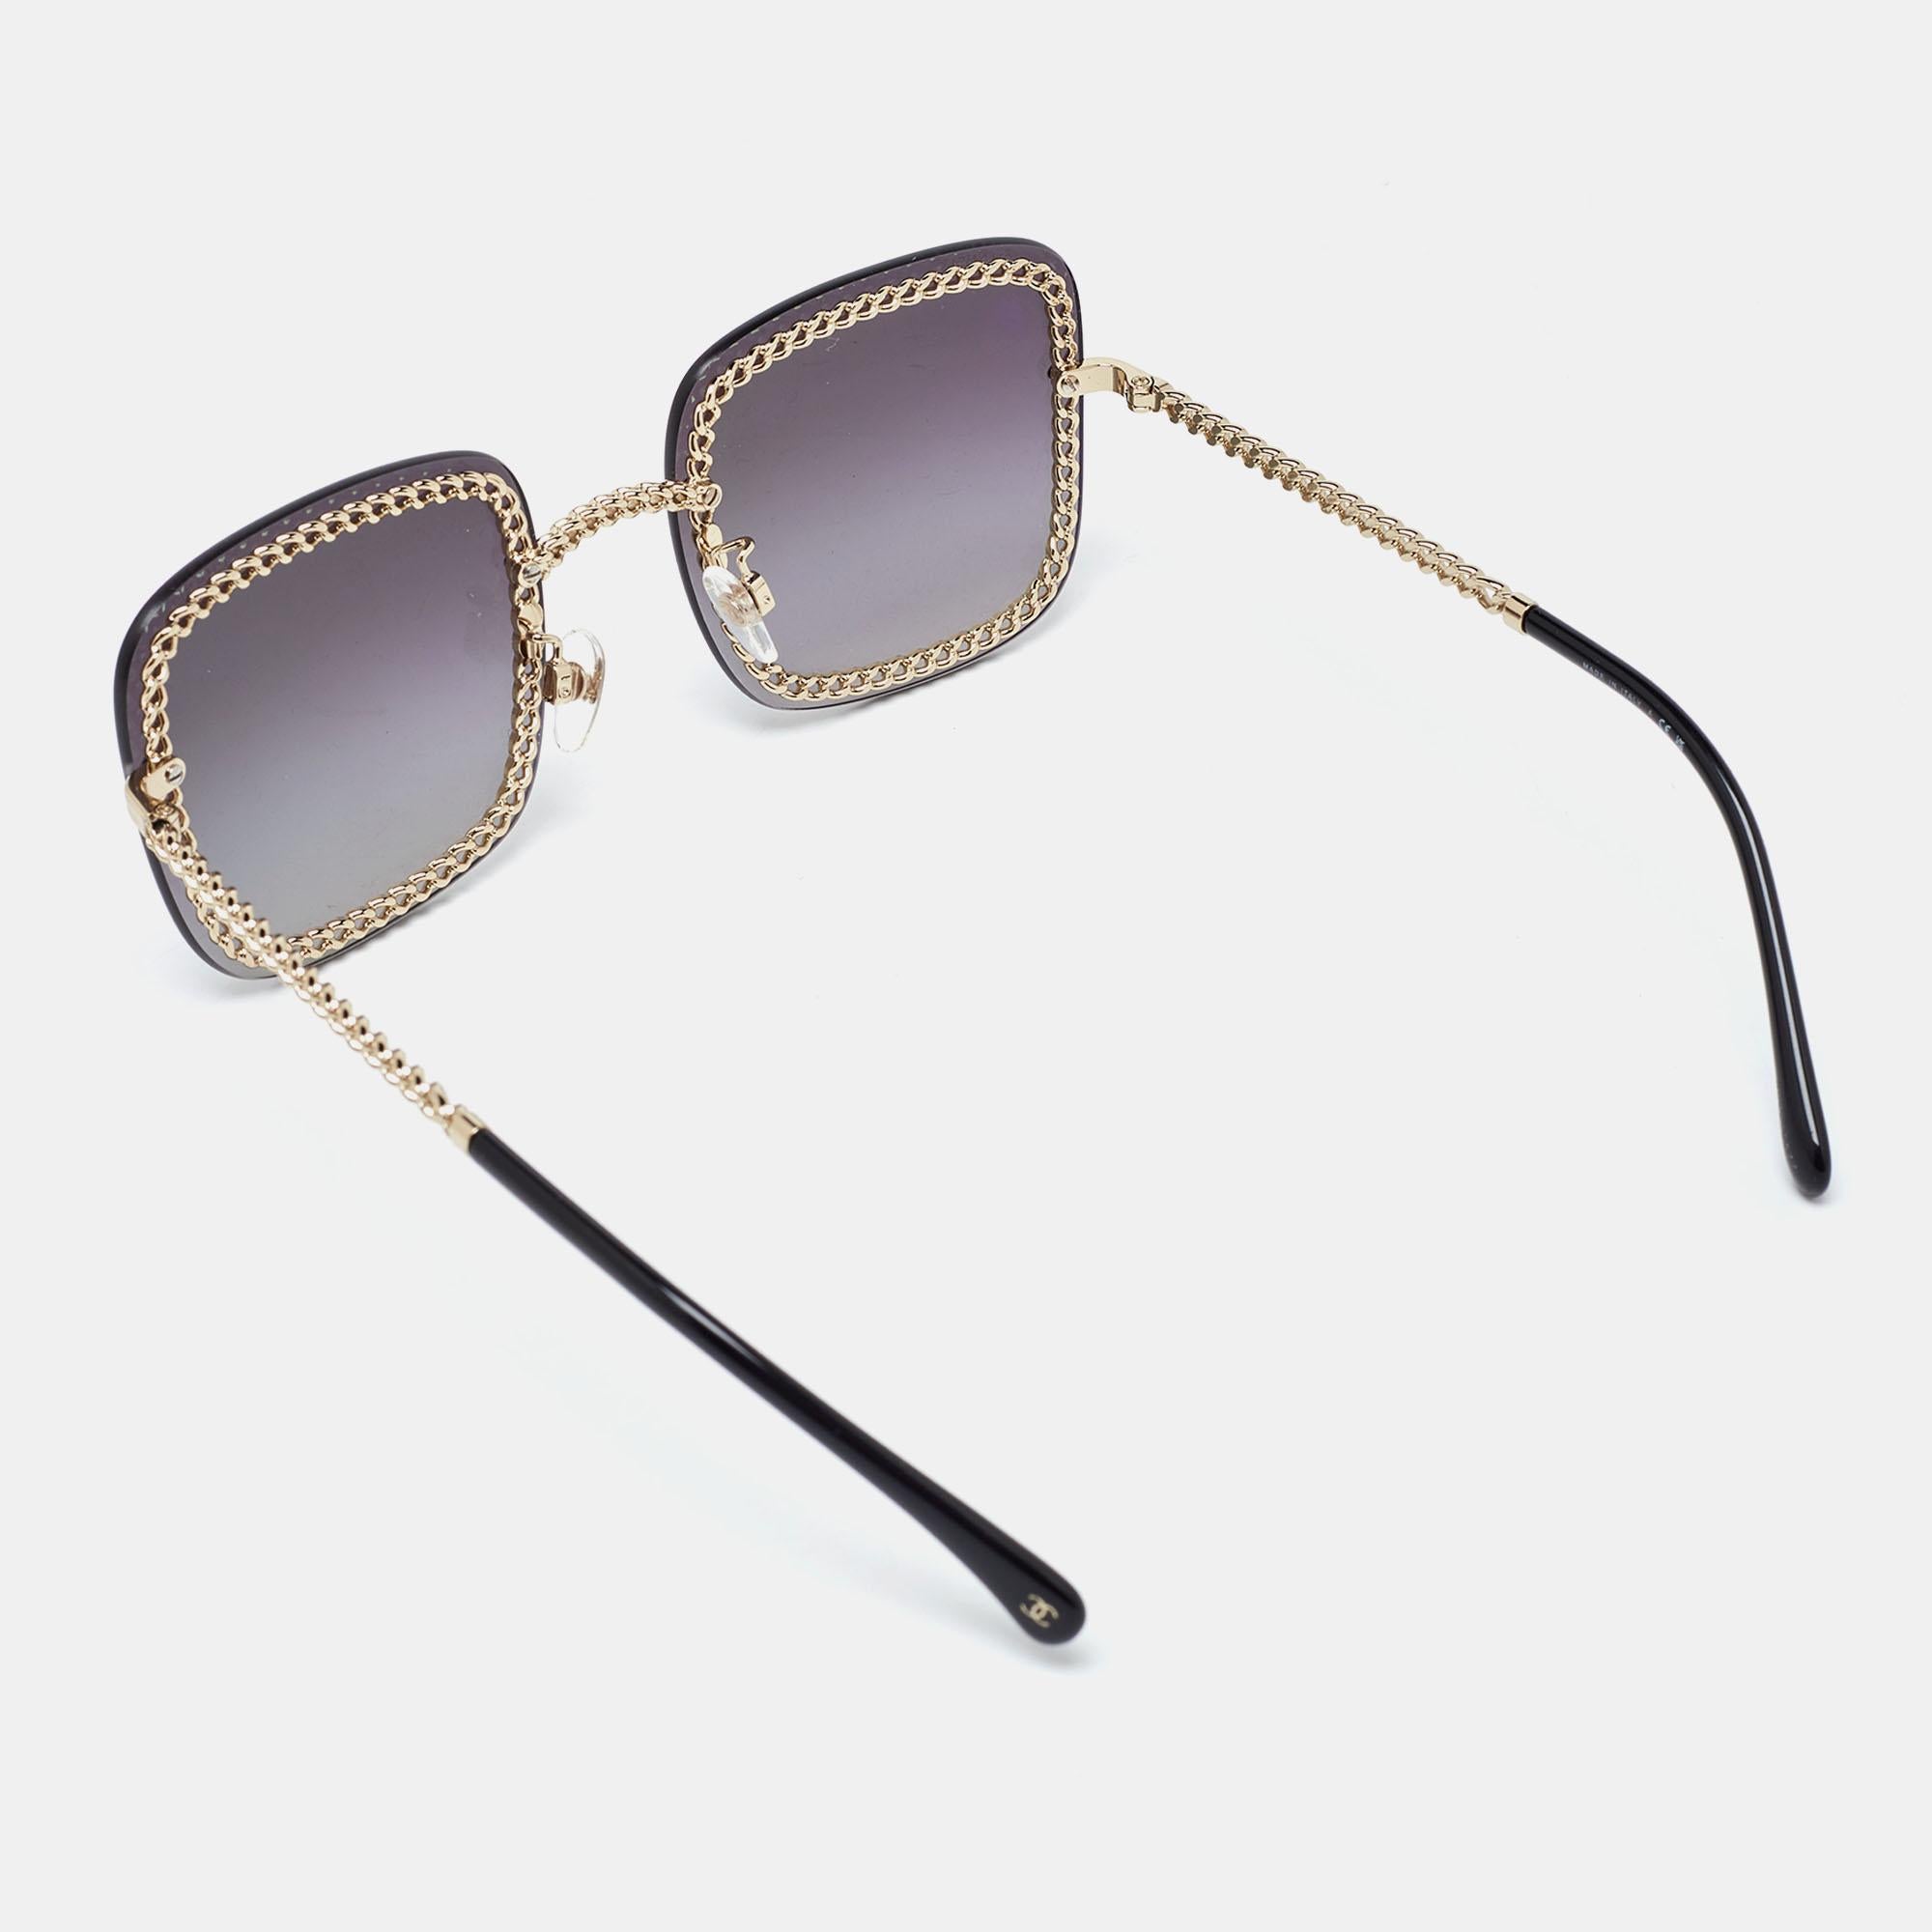 Une paire de lunettes de soleil de Chanel fera certainement l'objet d'un achat de prestige. Dotées d'une monture tendance et de verres destinés à protéger vos yeux, ces lunettes de soleil sont idéales pour être portées toute la journée.

Comprend :